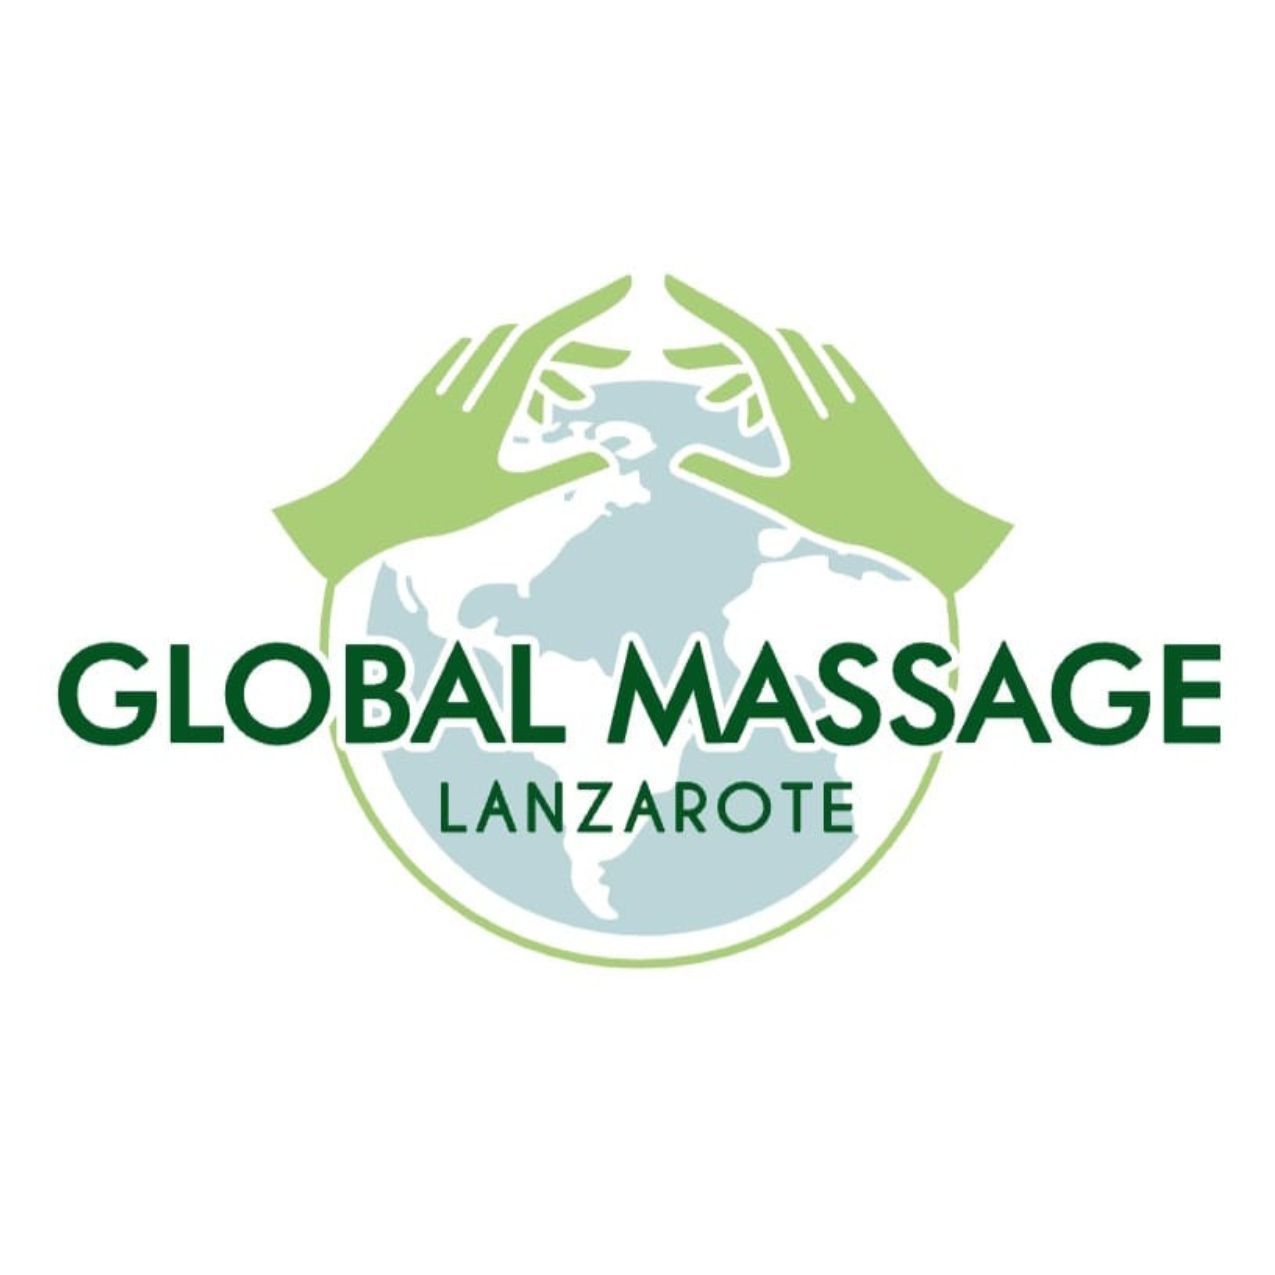 Global Massage Lanzarote, Avenida Islas Canarias, Apartamentos Marysol, 35508, Teguise